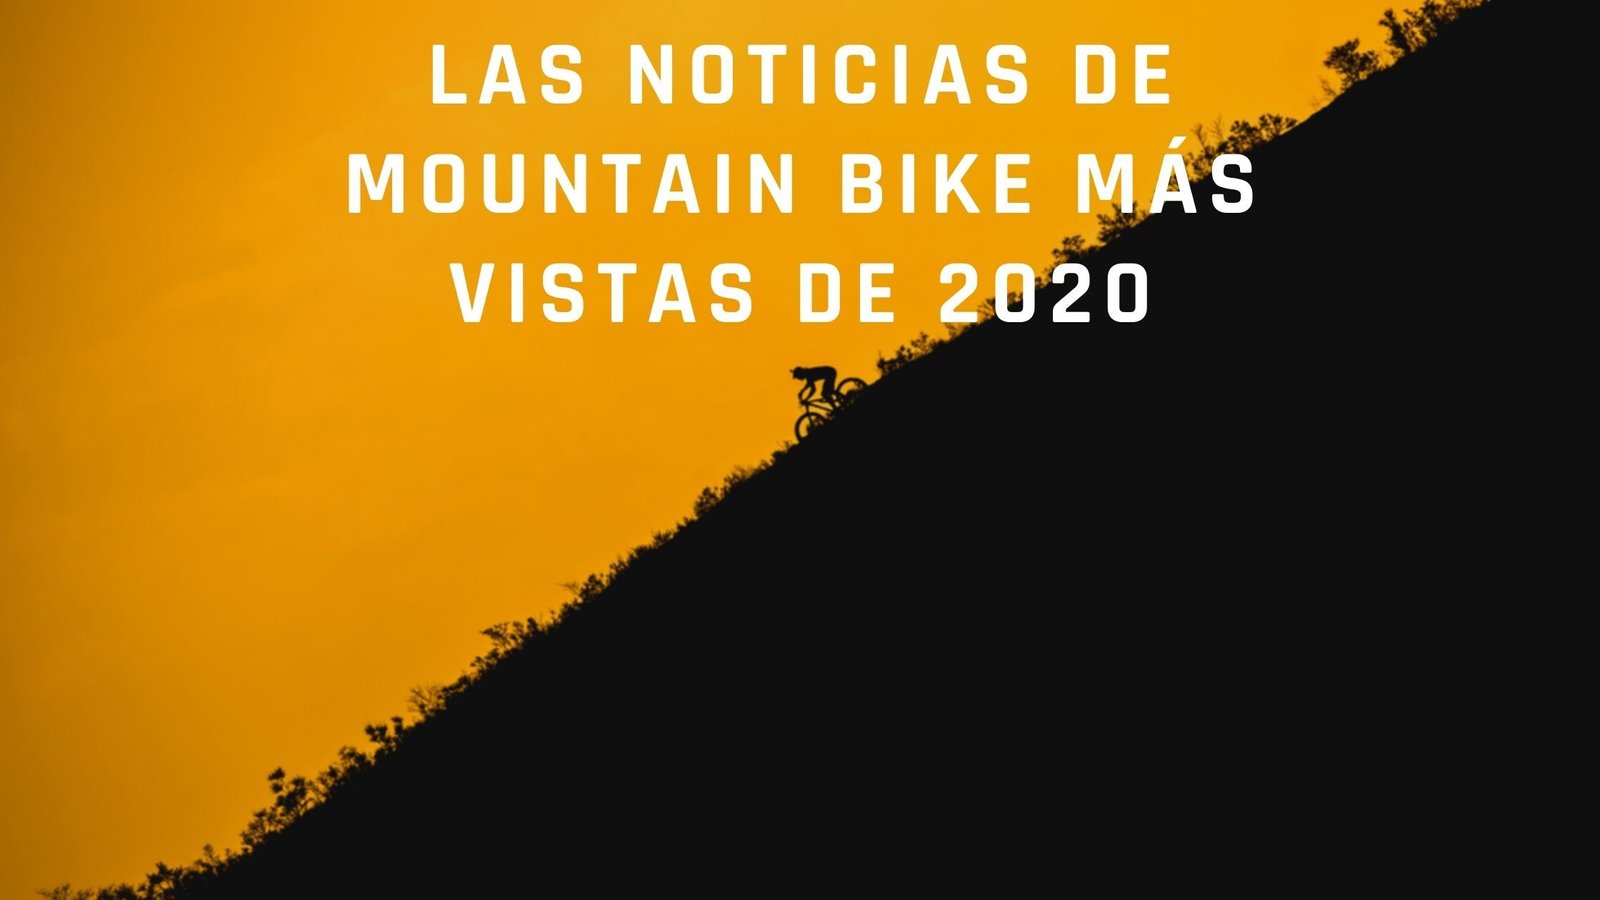 Las noticias de mountain bike más vistas de 2020